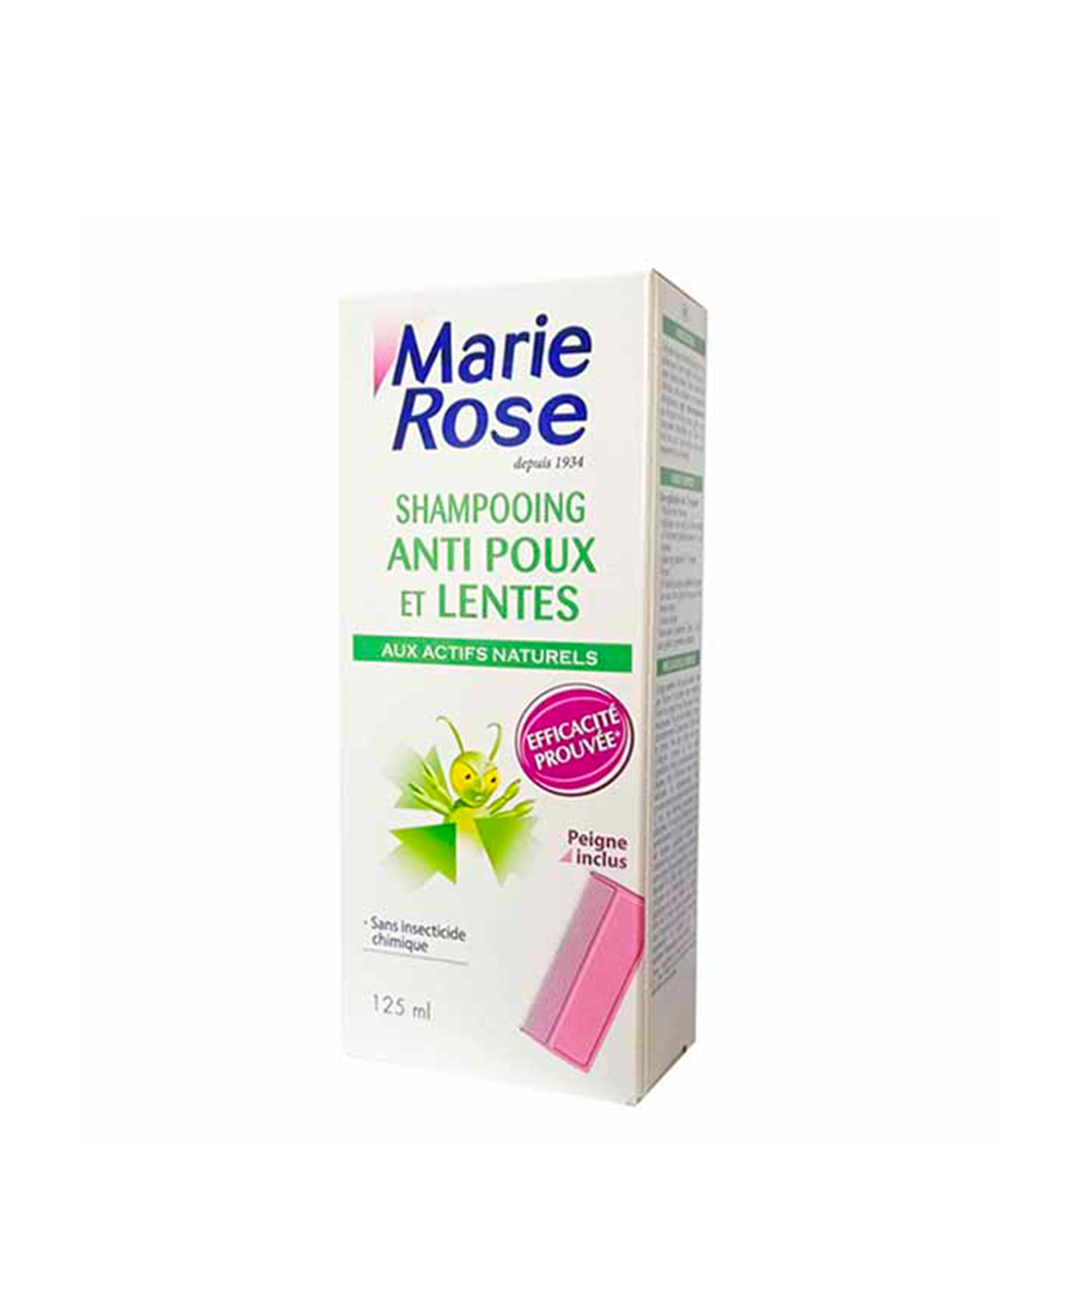 Marie Rose shampoing Anti Poux et Lentes 125 Ml pas cher